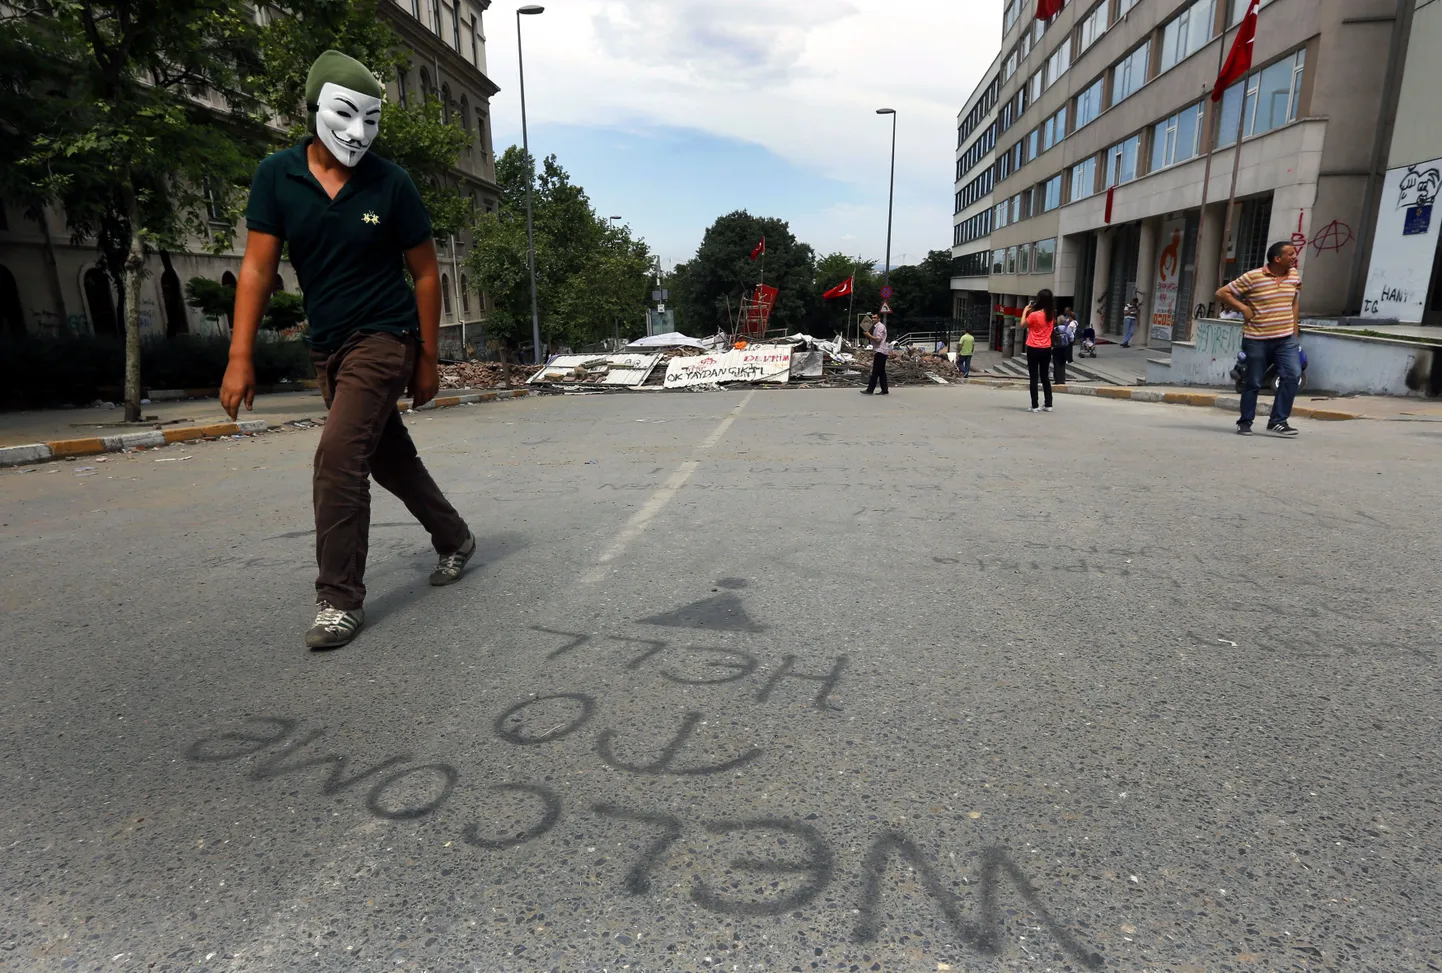 Guy Fawkesi maski kandev valitsusvastane kõnnib Istanbuli tänaval mööda gräfitist "Tere tulemast põrgusse".